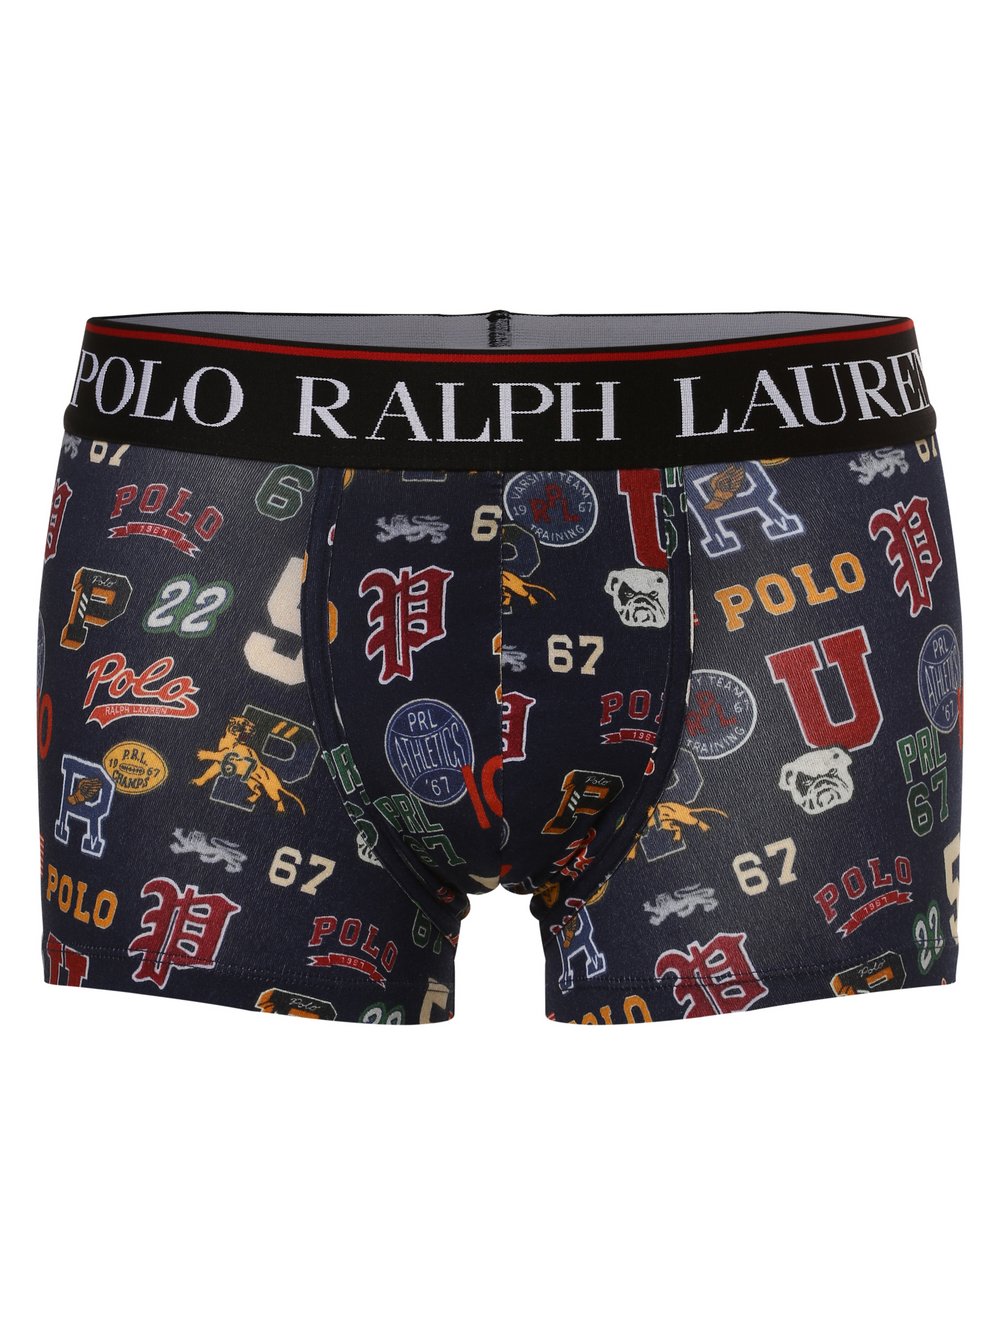 Polo Ralph Lauren - Obcisłe bokserki męskie, brązowy|wielokolorowy